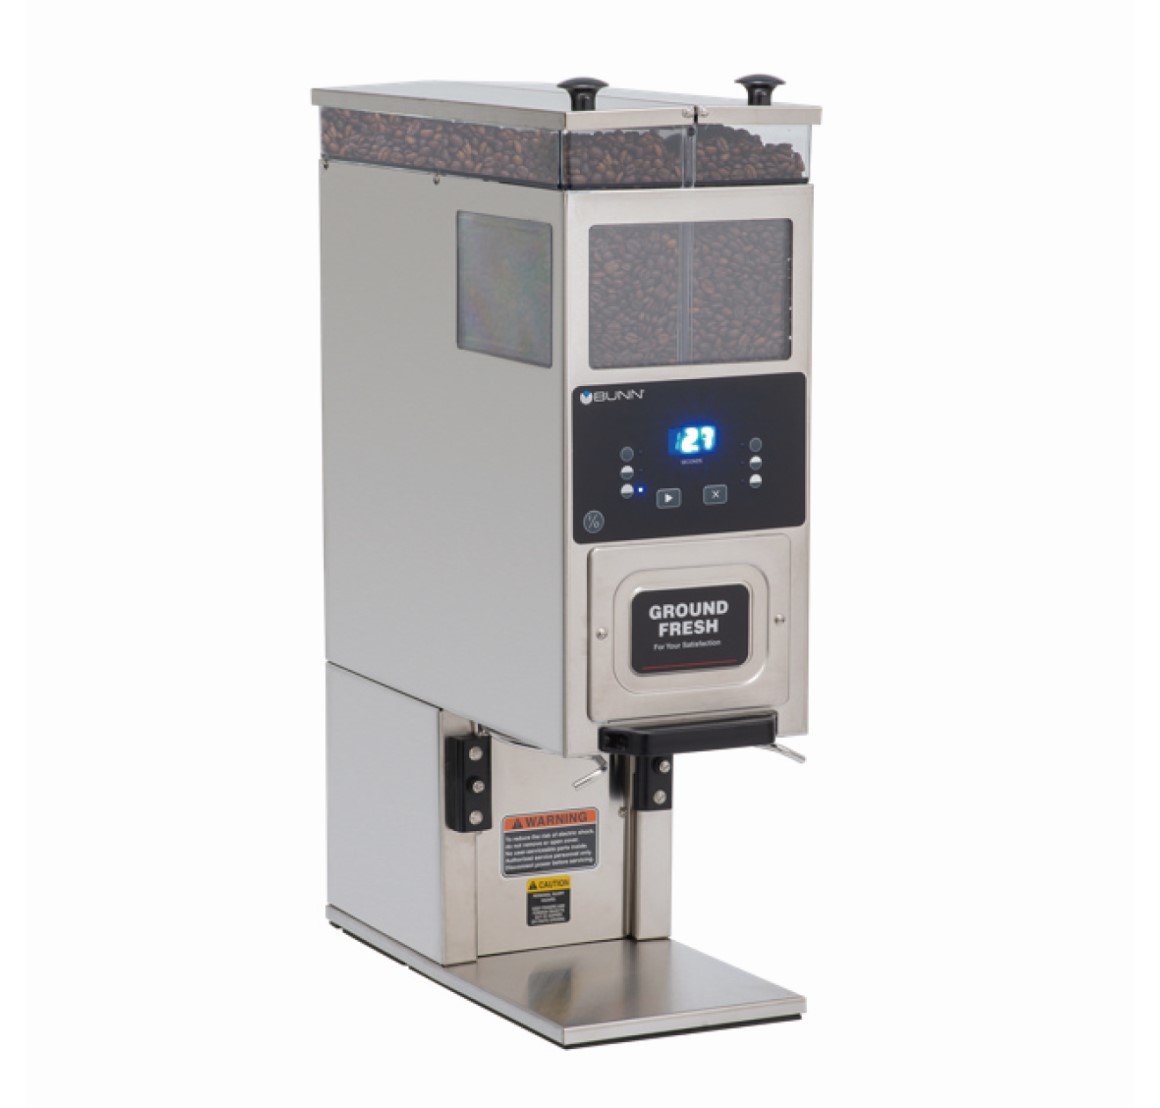 BUNN BrewWISE®対応コーヒーグラインダー G9-2T DBC